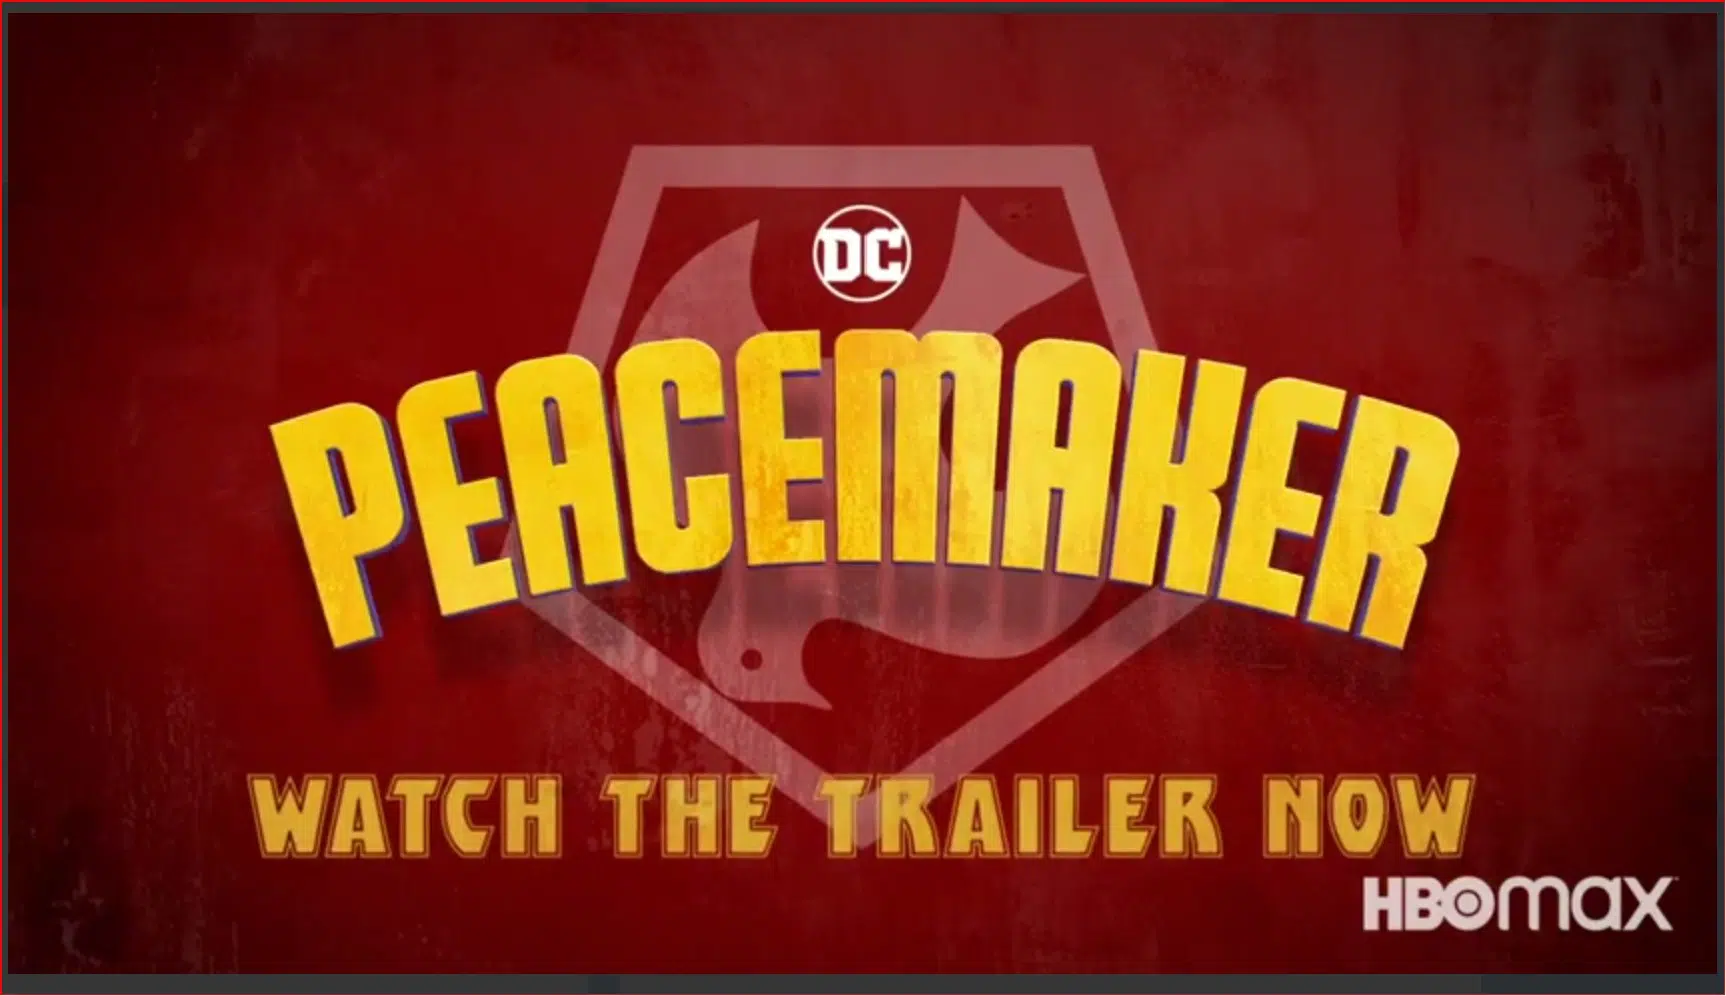 ?#تریلر رسمی سریال Peacemaker محصول سرویس استریم HBO Max منتشر شد. این سریال با بازی جان سینا، اسپین آفی برای فیلم The Suicide Squad است و جیمز گان خالق، نویسنده و کارگردان پنج قسمت از هشت قسمت آن میباشد. ? شروع انتشار: ١۴٠٠/١٠/٢٣